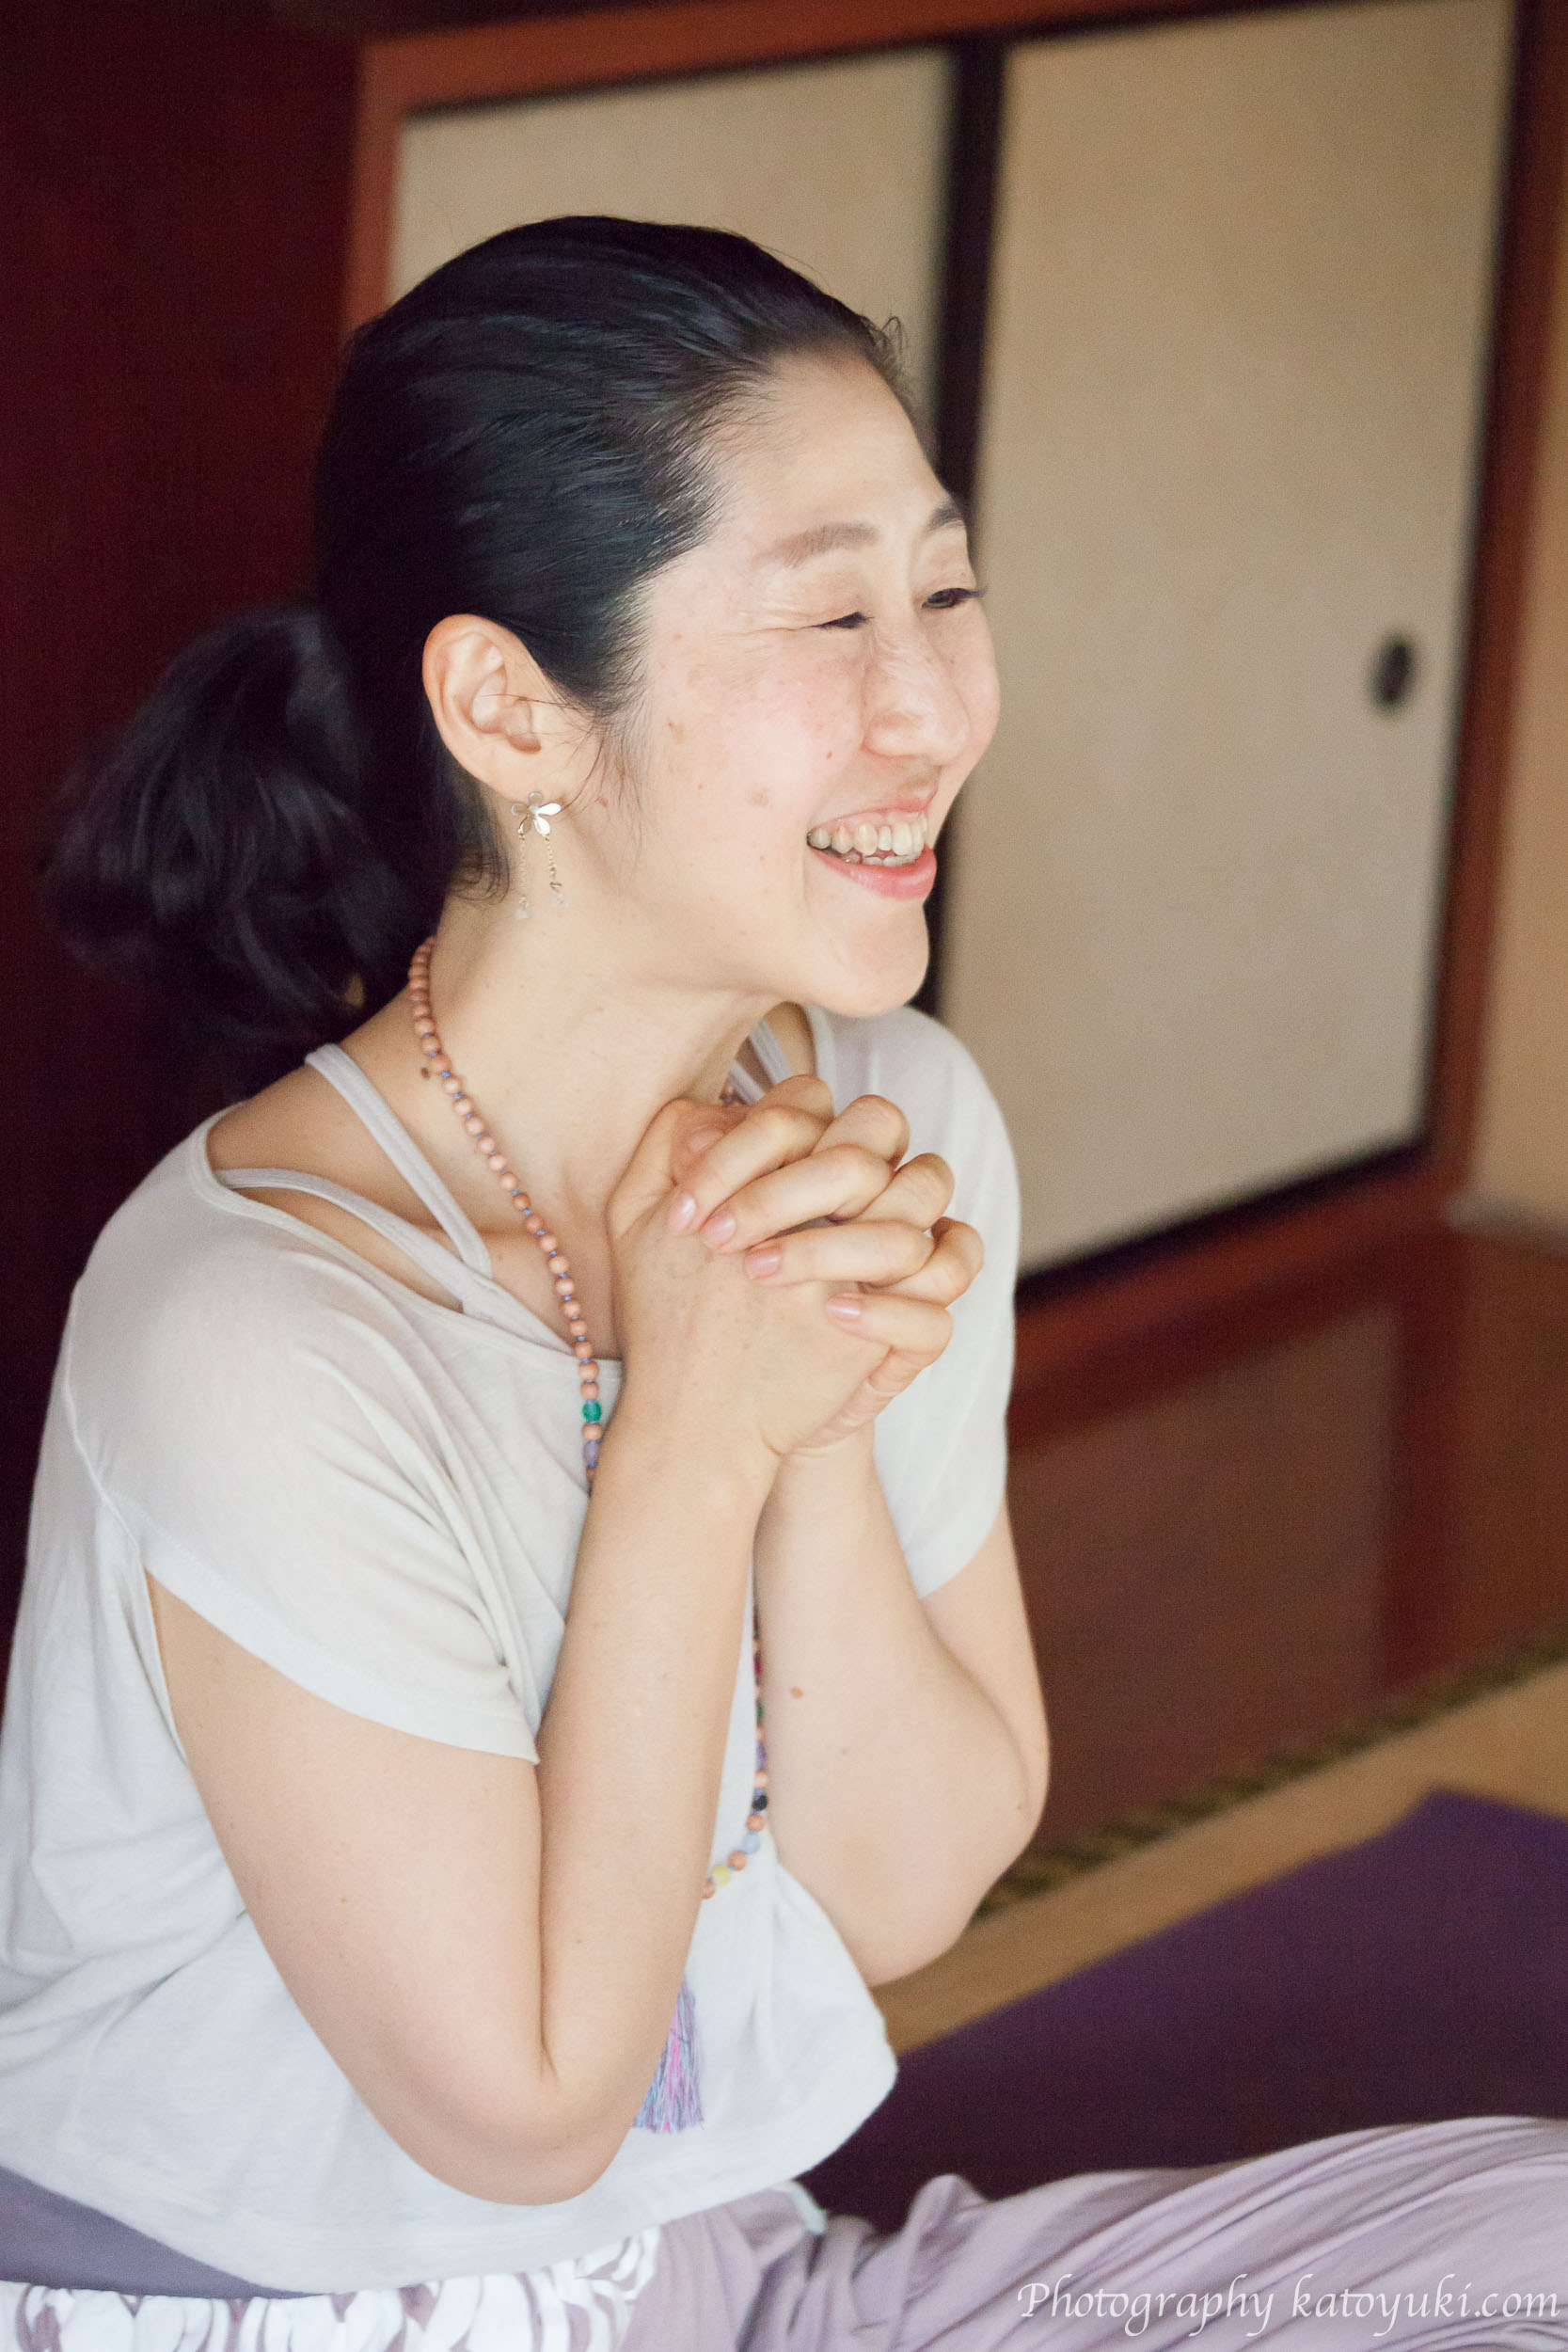 八王子ヨガ祭り「ナマケモノのゆるヨガライフのすすめ」Natsuko